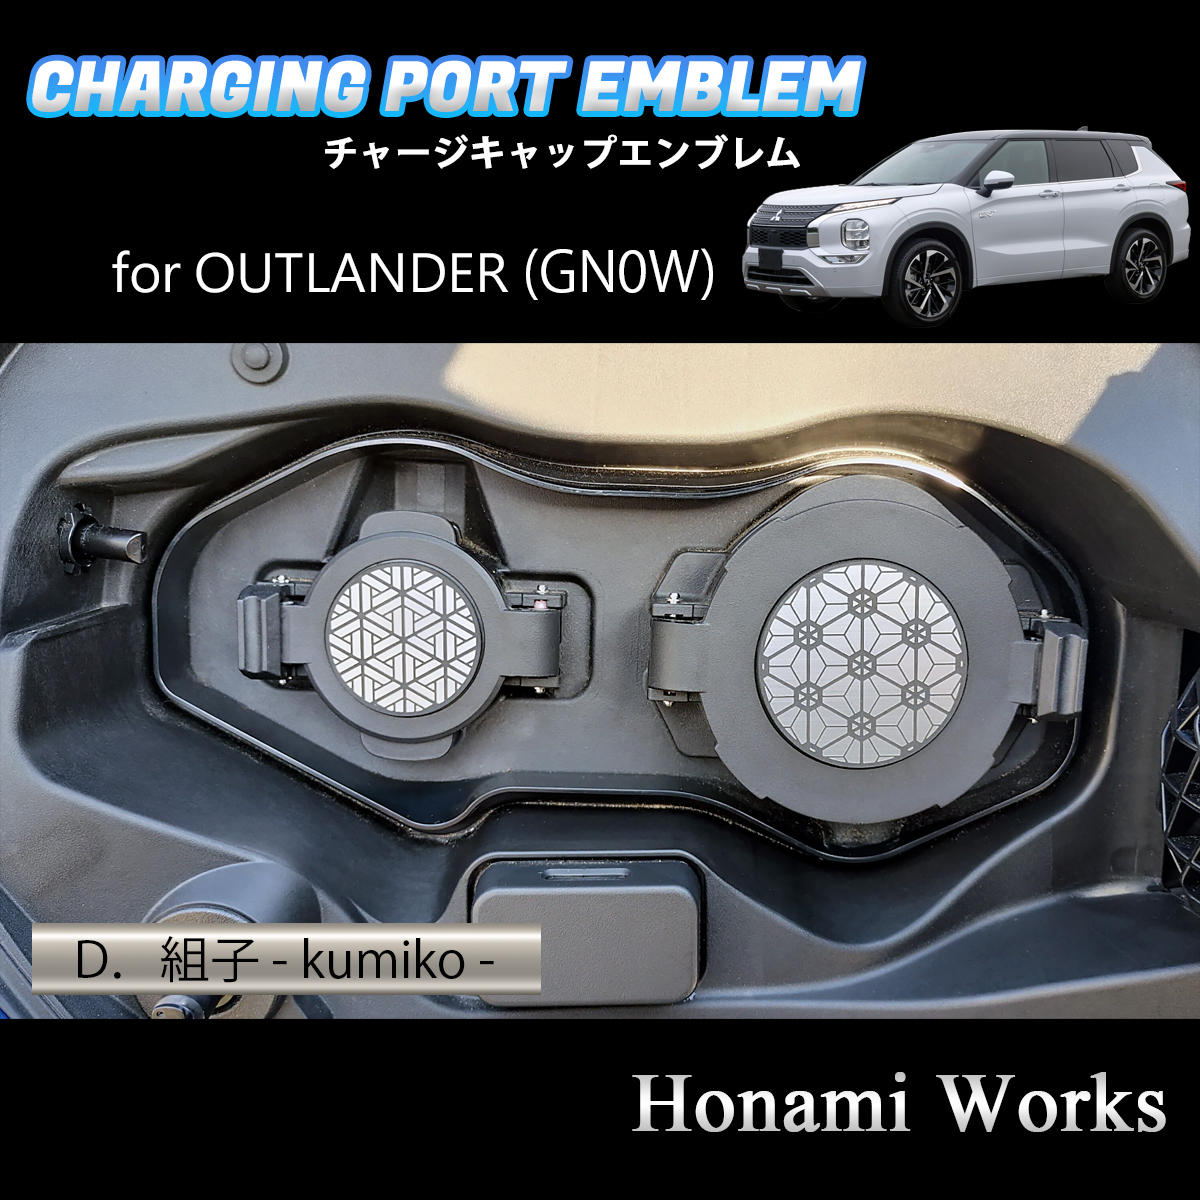 4 вид из выбор! GN серия OUTLANDER PHEV Outlander зарядка колпак покрытие эмблема стикер зарядка порт aluminium волосы линия 